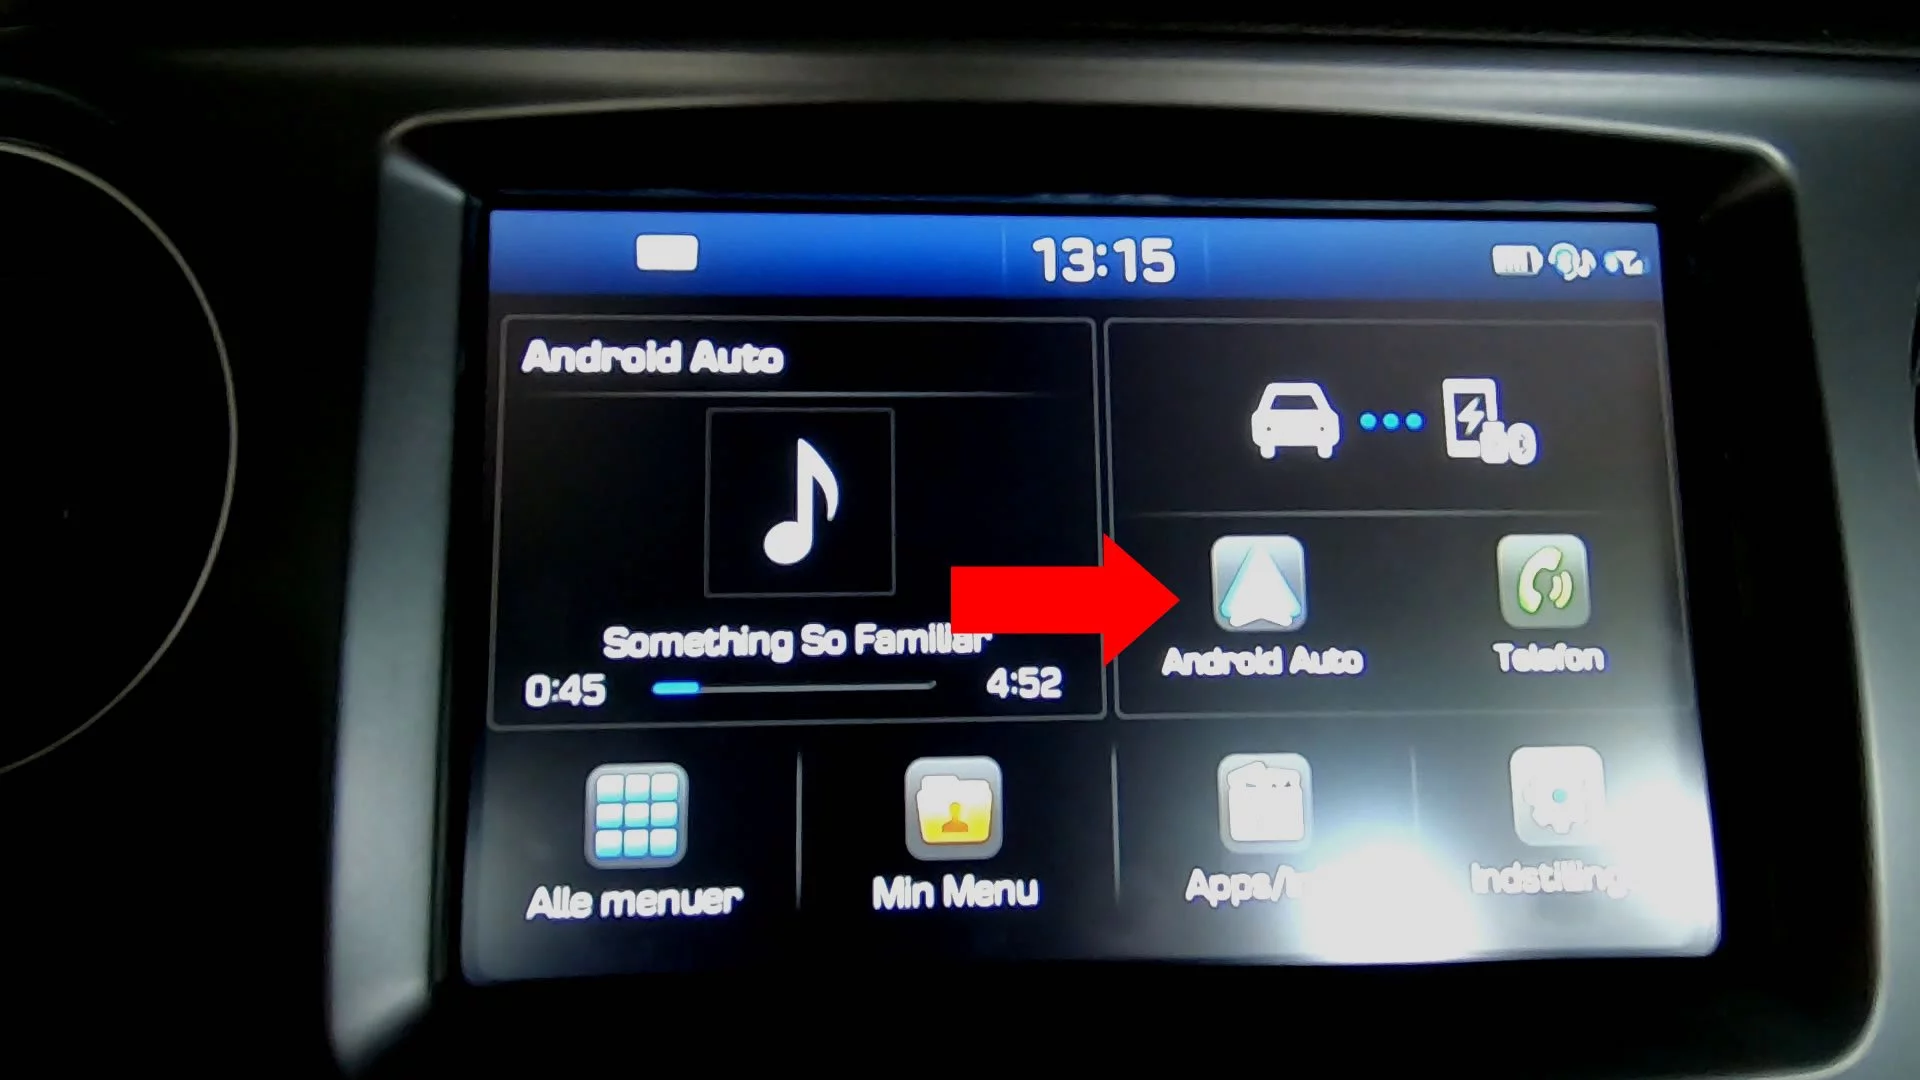 Андроид авто fermata. Фермата авто в андроид. Android auto fermata auto на весь экран Haval Dargo. Беспроводное подключение к андроид авто лучшие устройства Haval f7. Android auto Plus Minus.